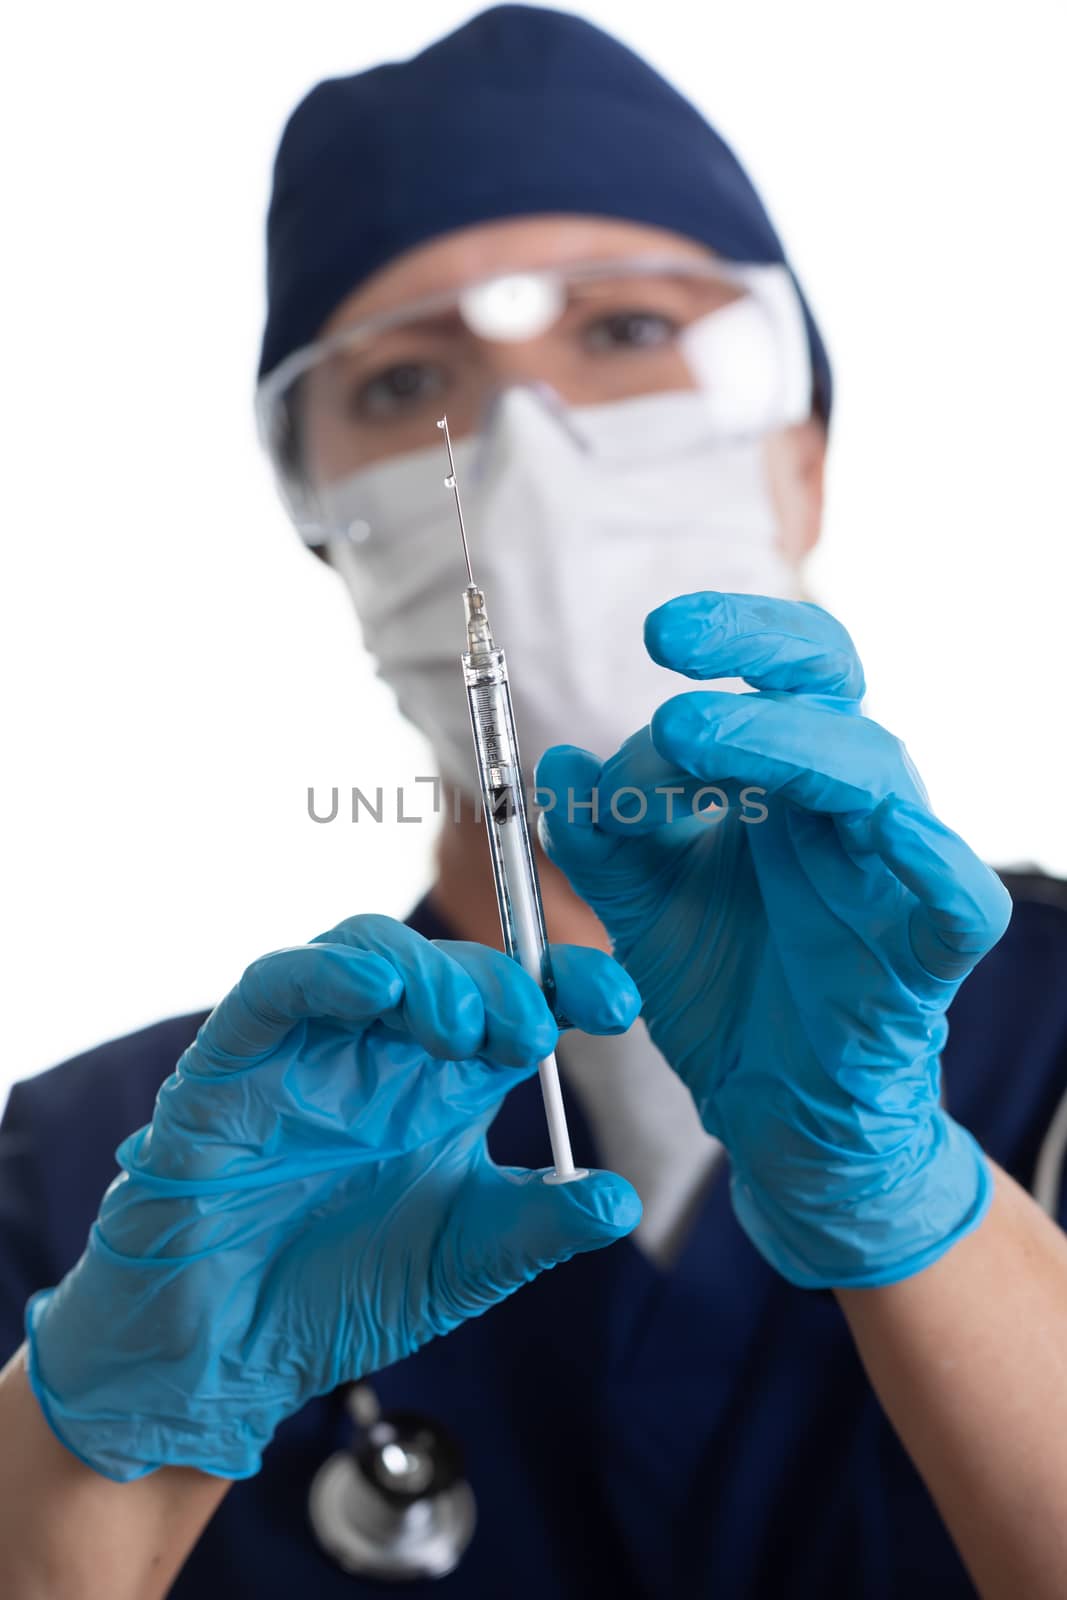 Doctor or Nurse Holding Medical Syringe with Needle on White Background.